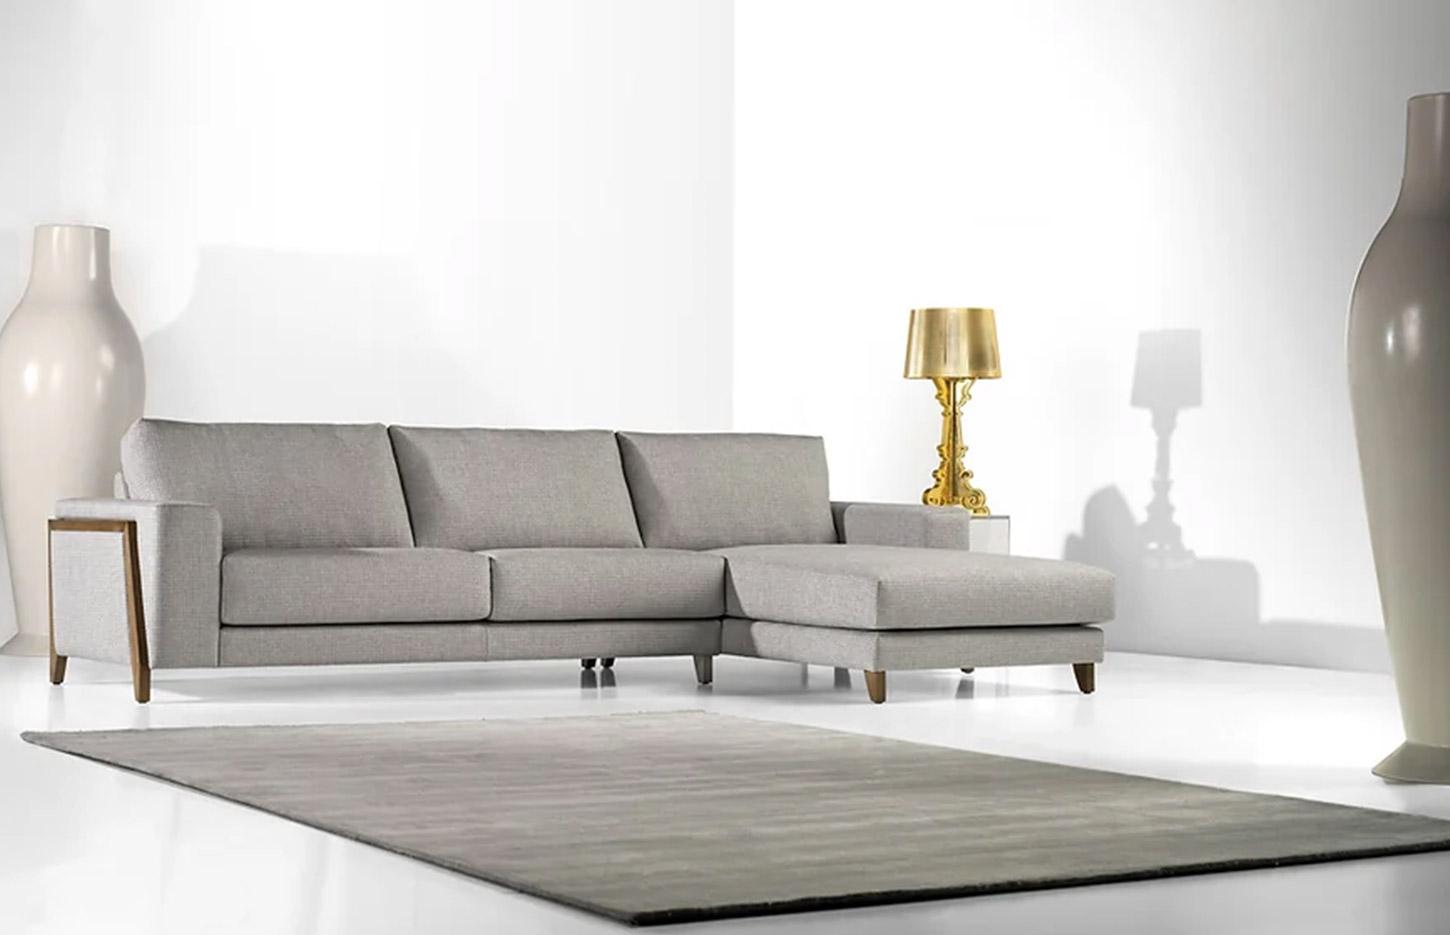 Canapé confortable en tissu avec pieds et structure en bois, gamme Balaton - France Bureau